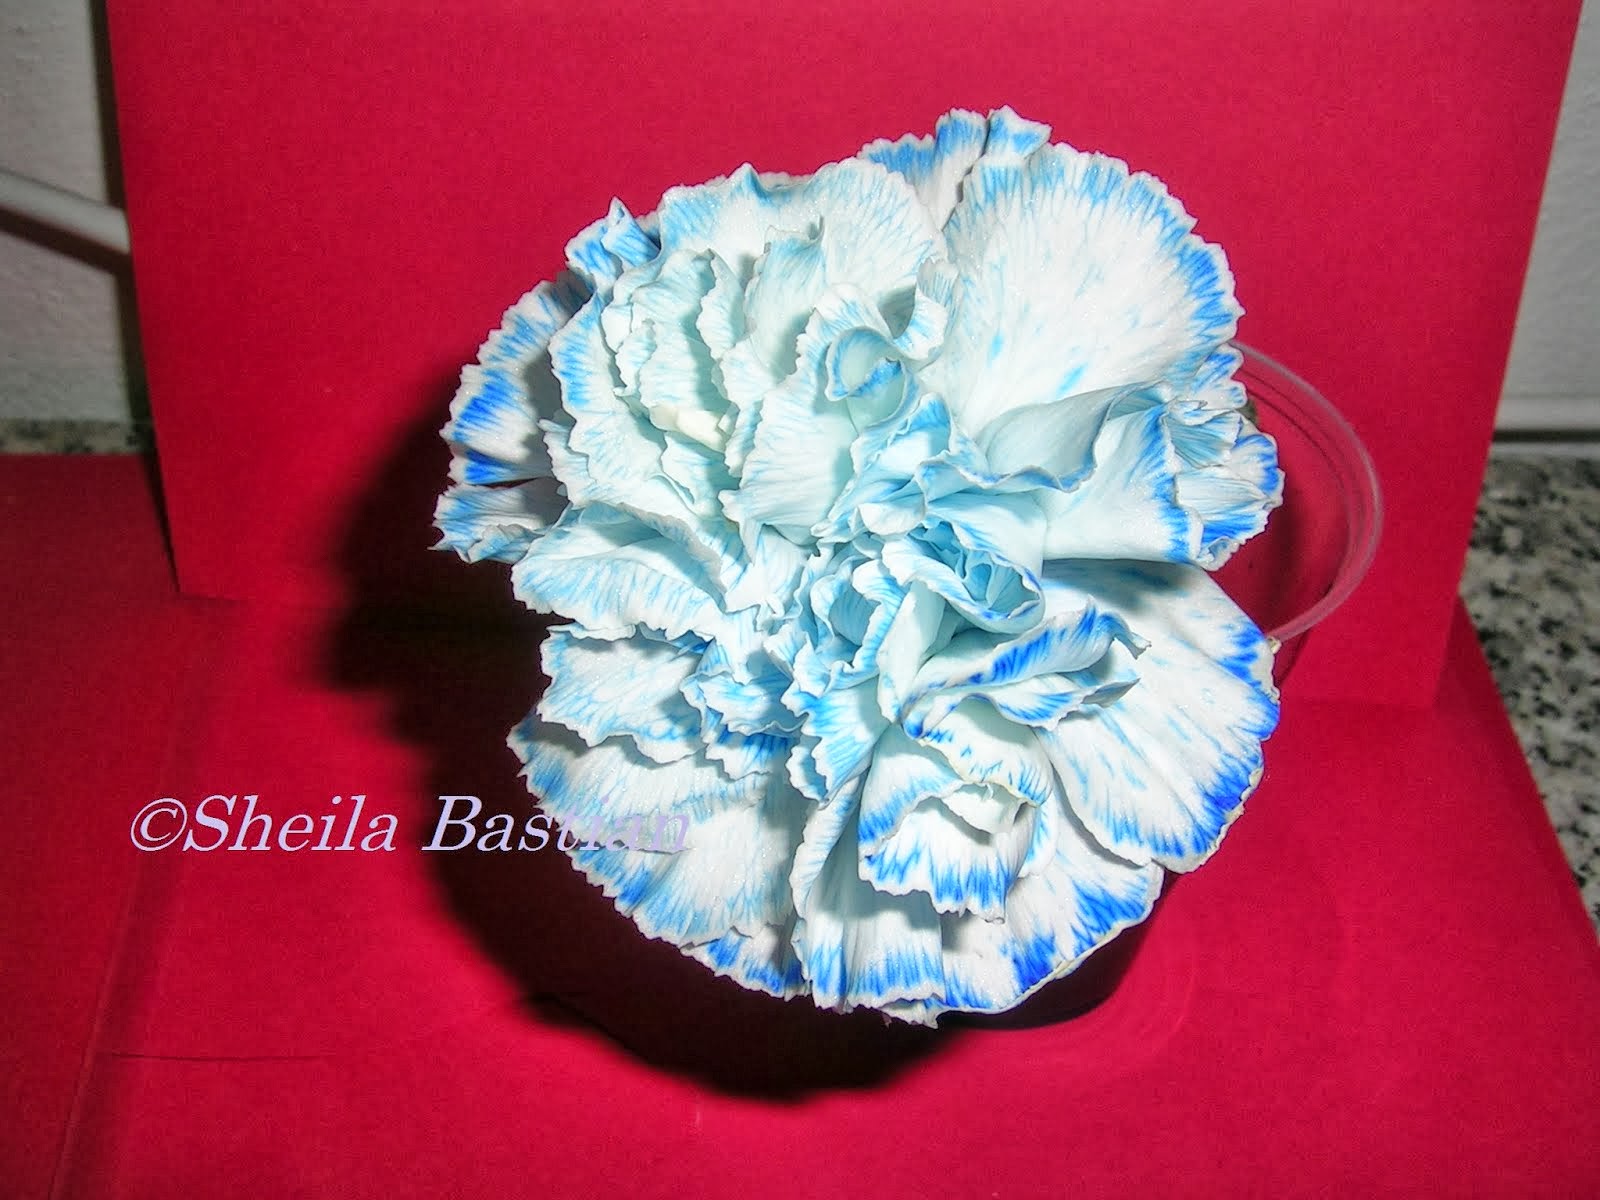 A carnation left in blue ink